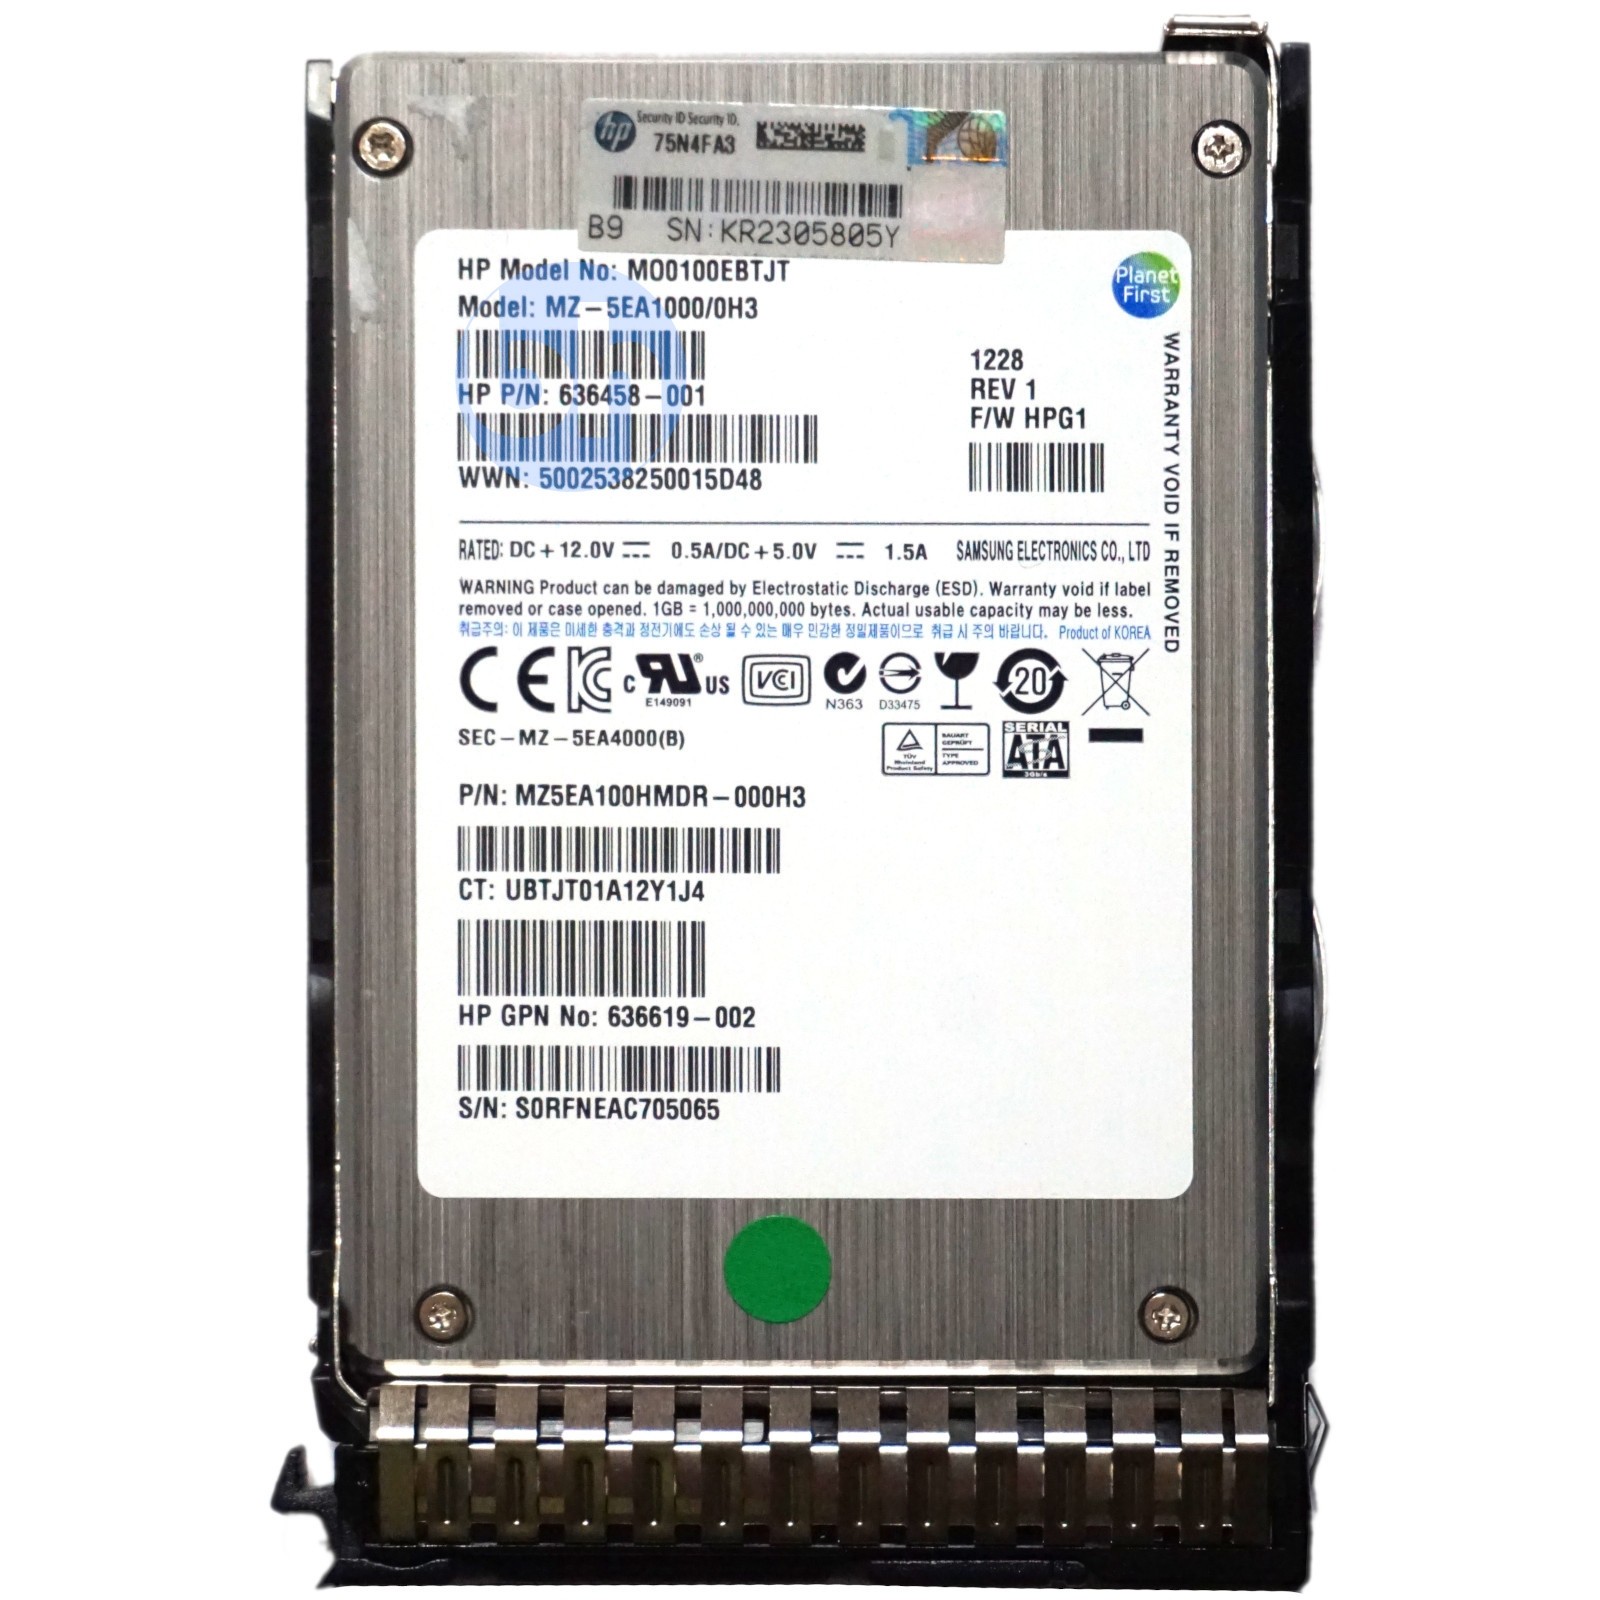 HP (636458-001) 100GB SATA II (SFF 2.5) 3Gbps SSD in Gen8/Gen9 Caddy